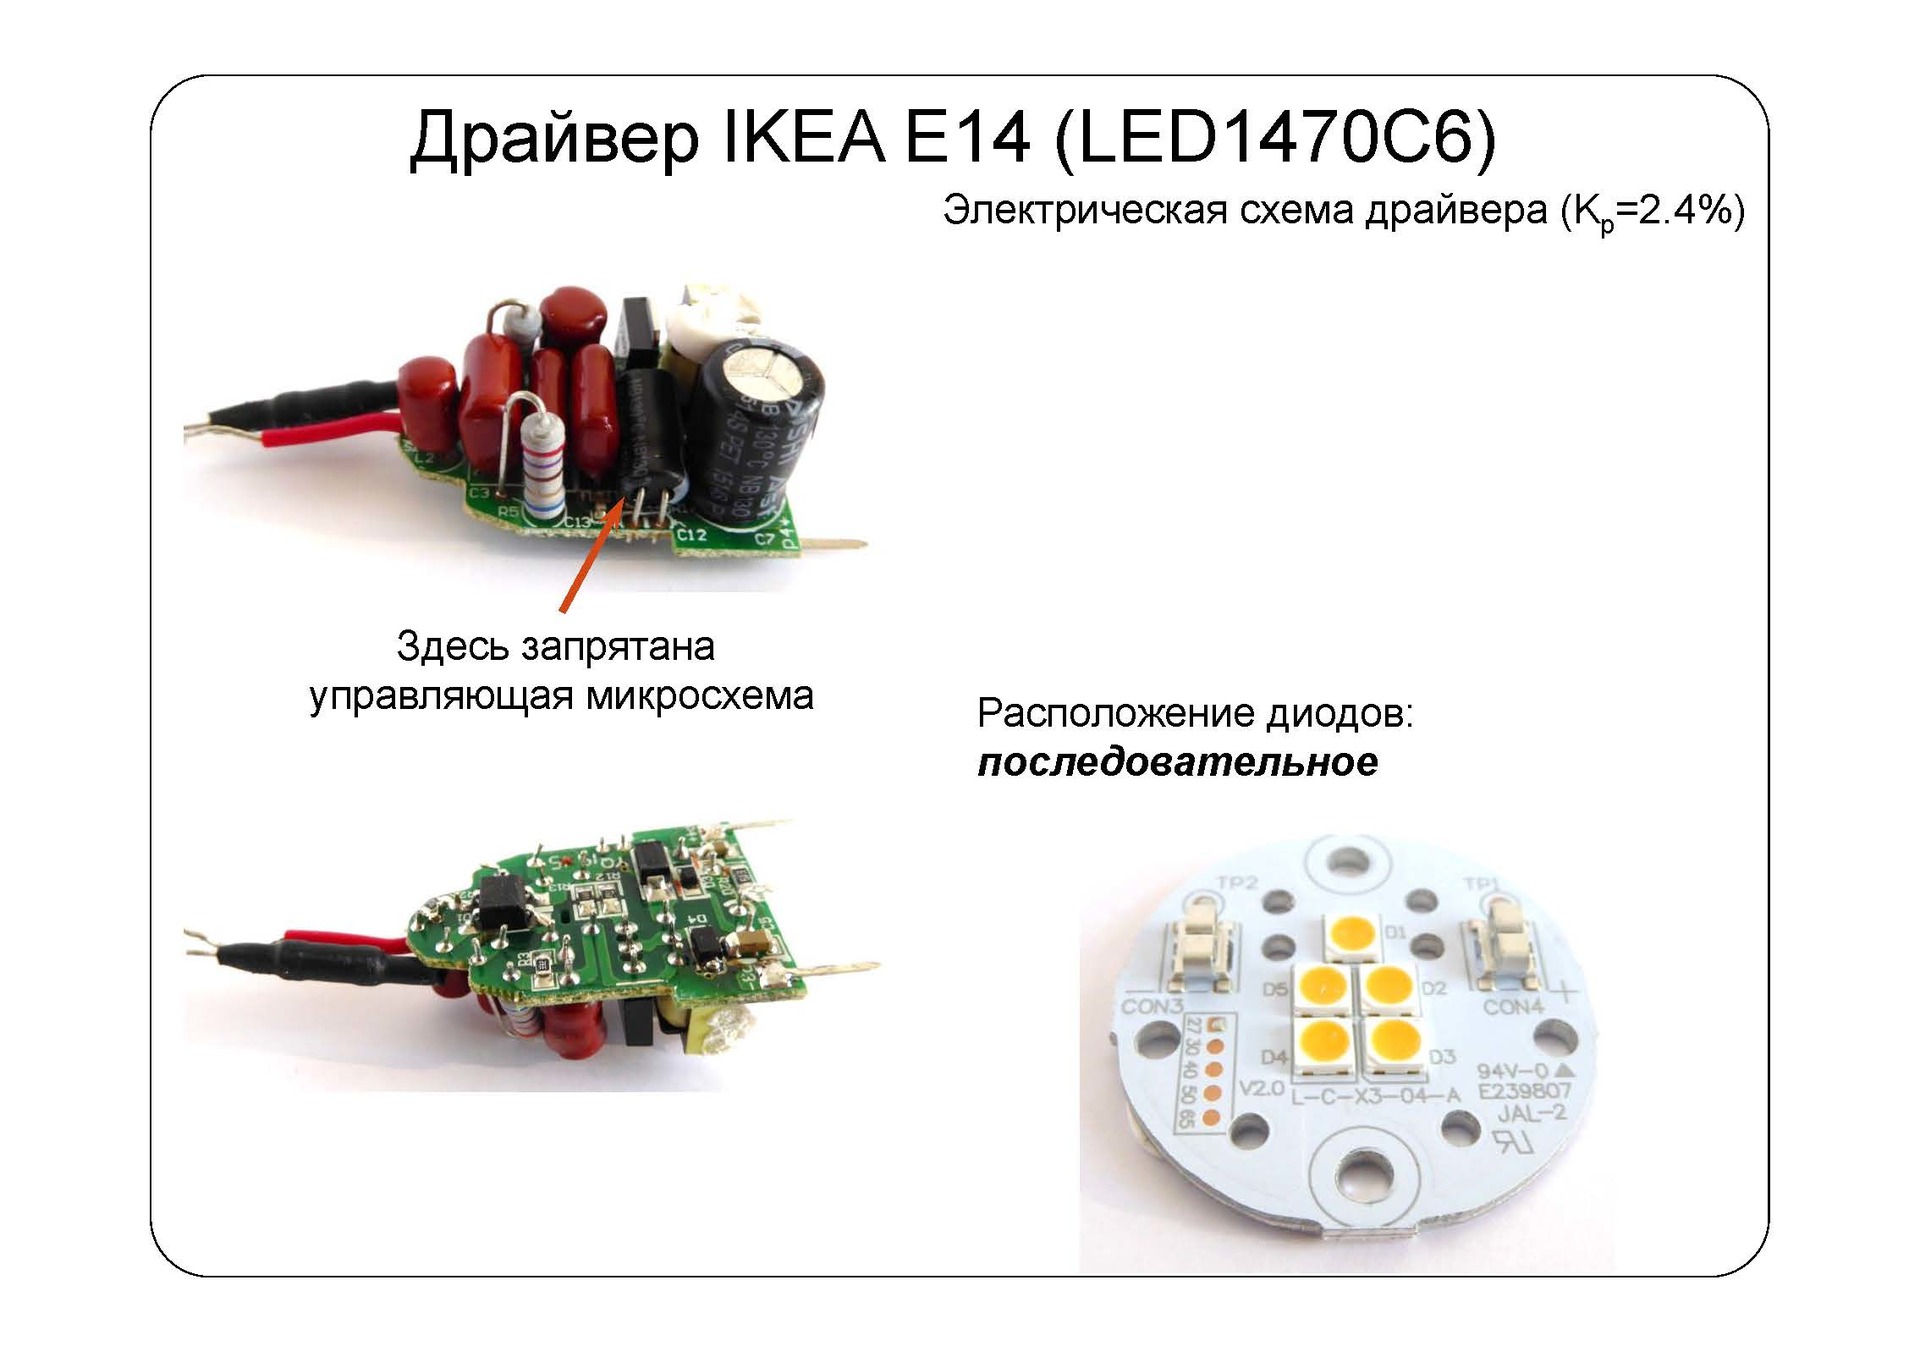 Взгляд изнутри: IKEA LED наносит ответный удар - 12